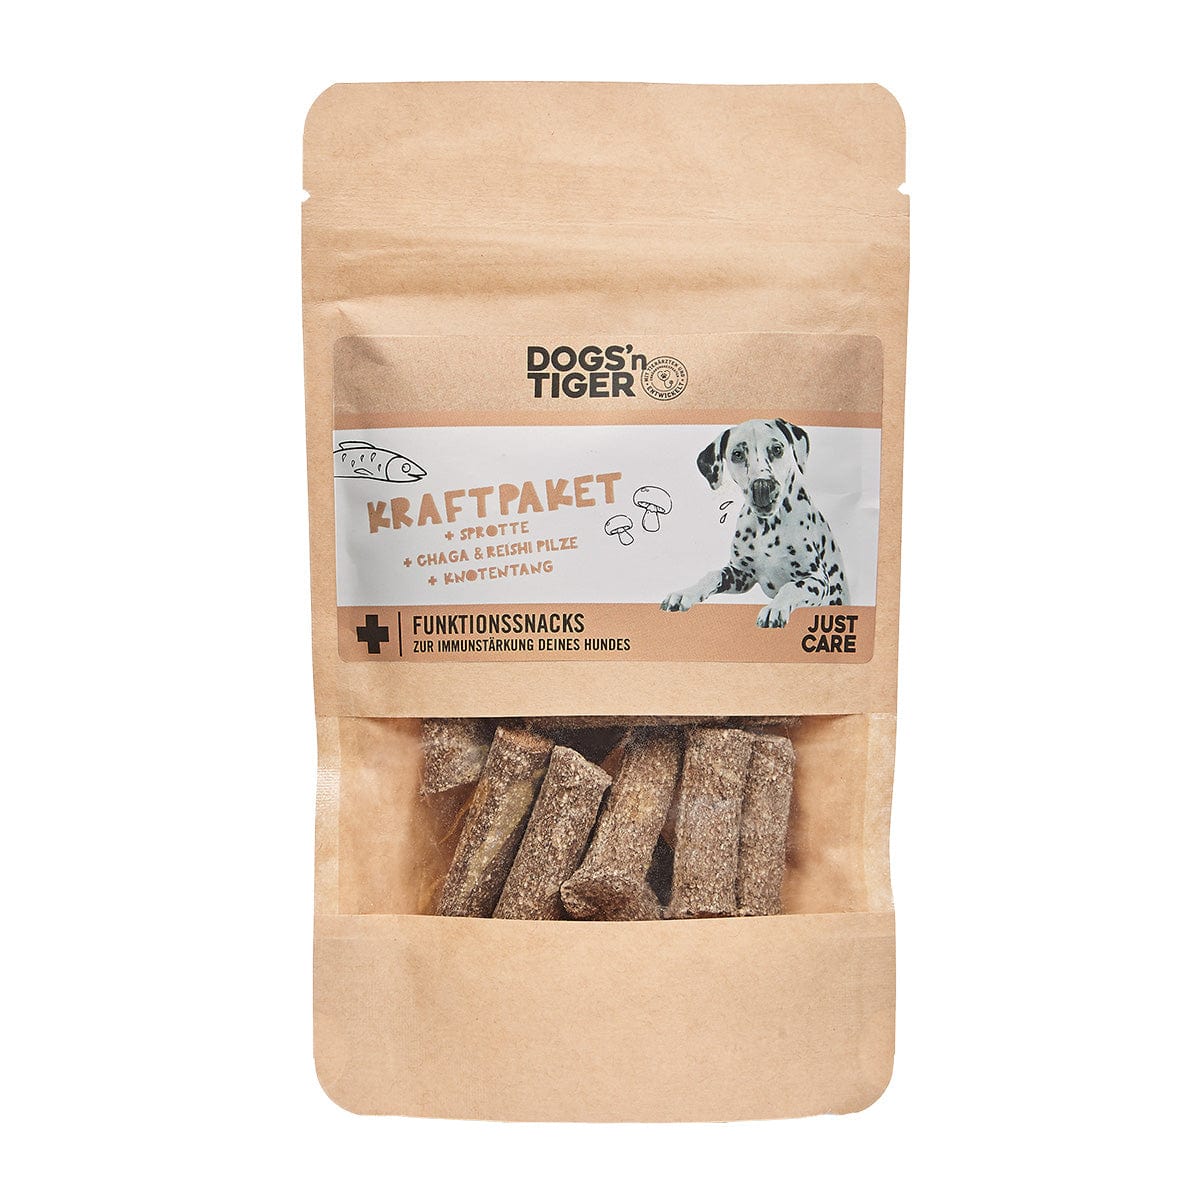 Packung Dogs'n Tiger Kraftpaket Funktionssnack für Hunde